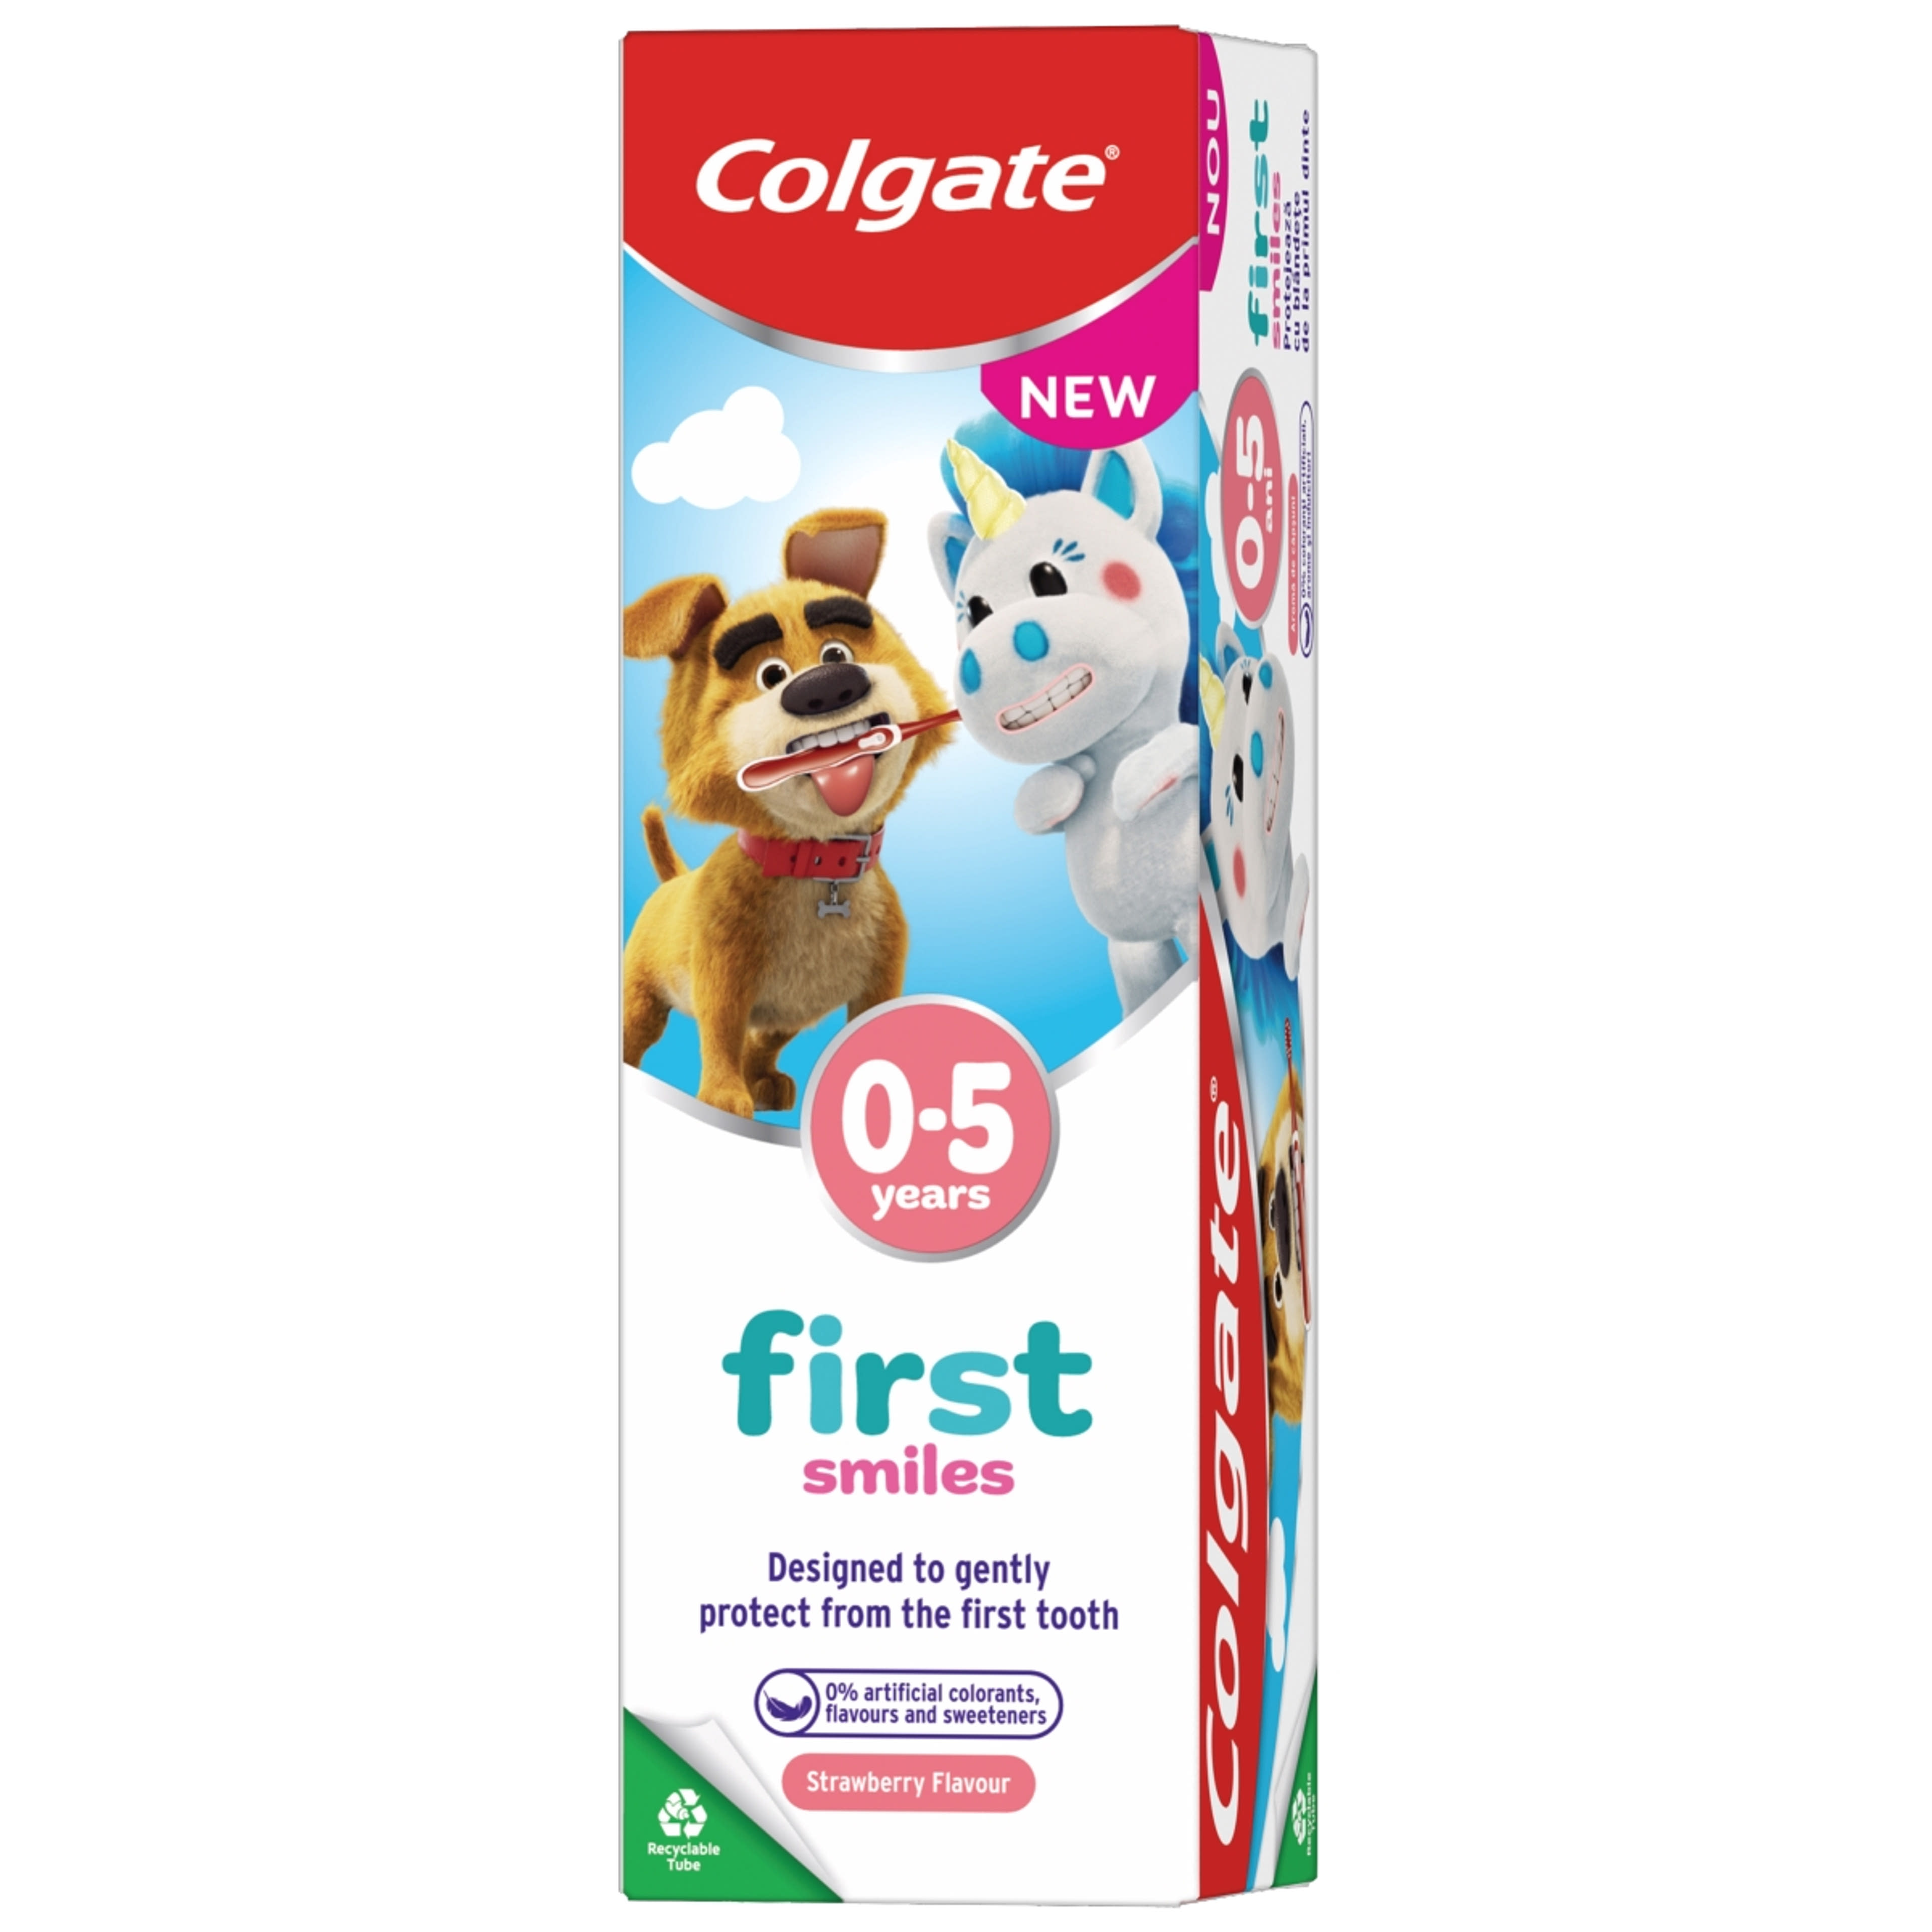 Colgate First Smiles fogkrém gyermekeknek 0-5 éves korig - 50 ml